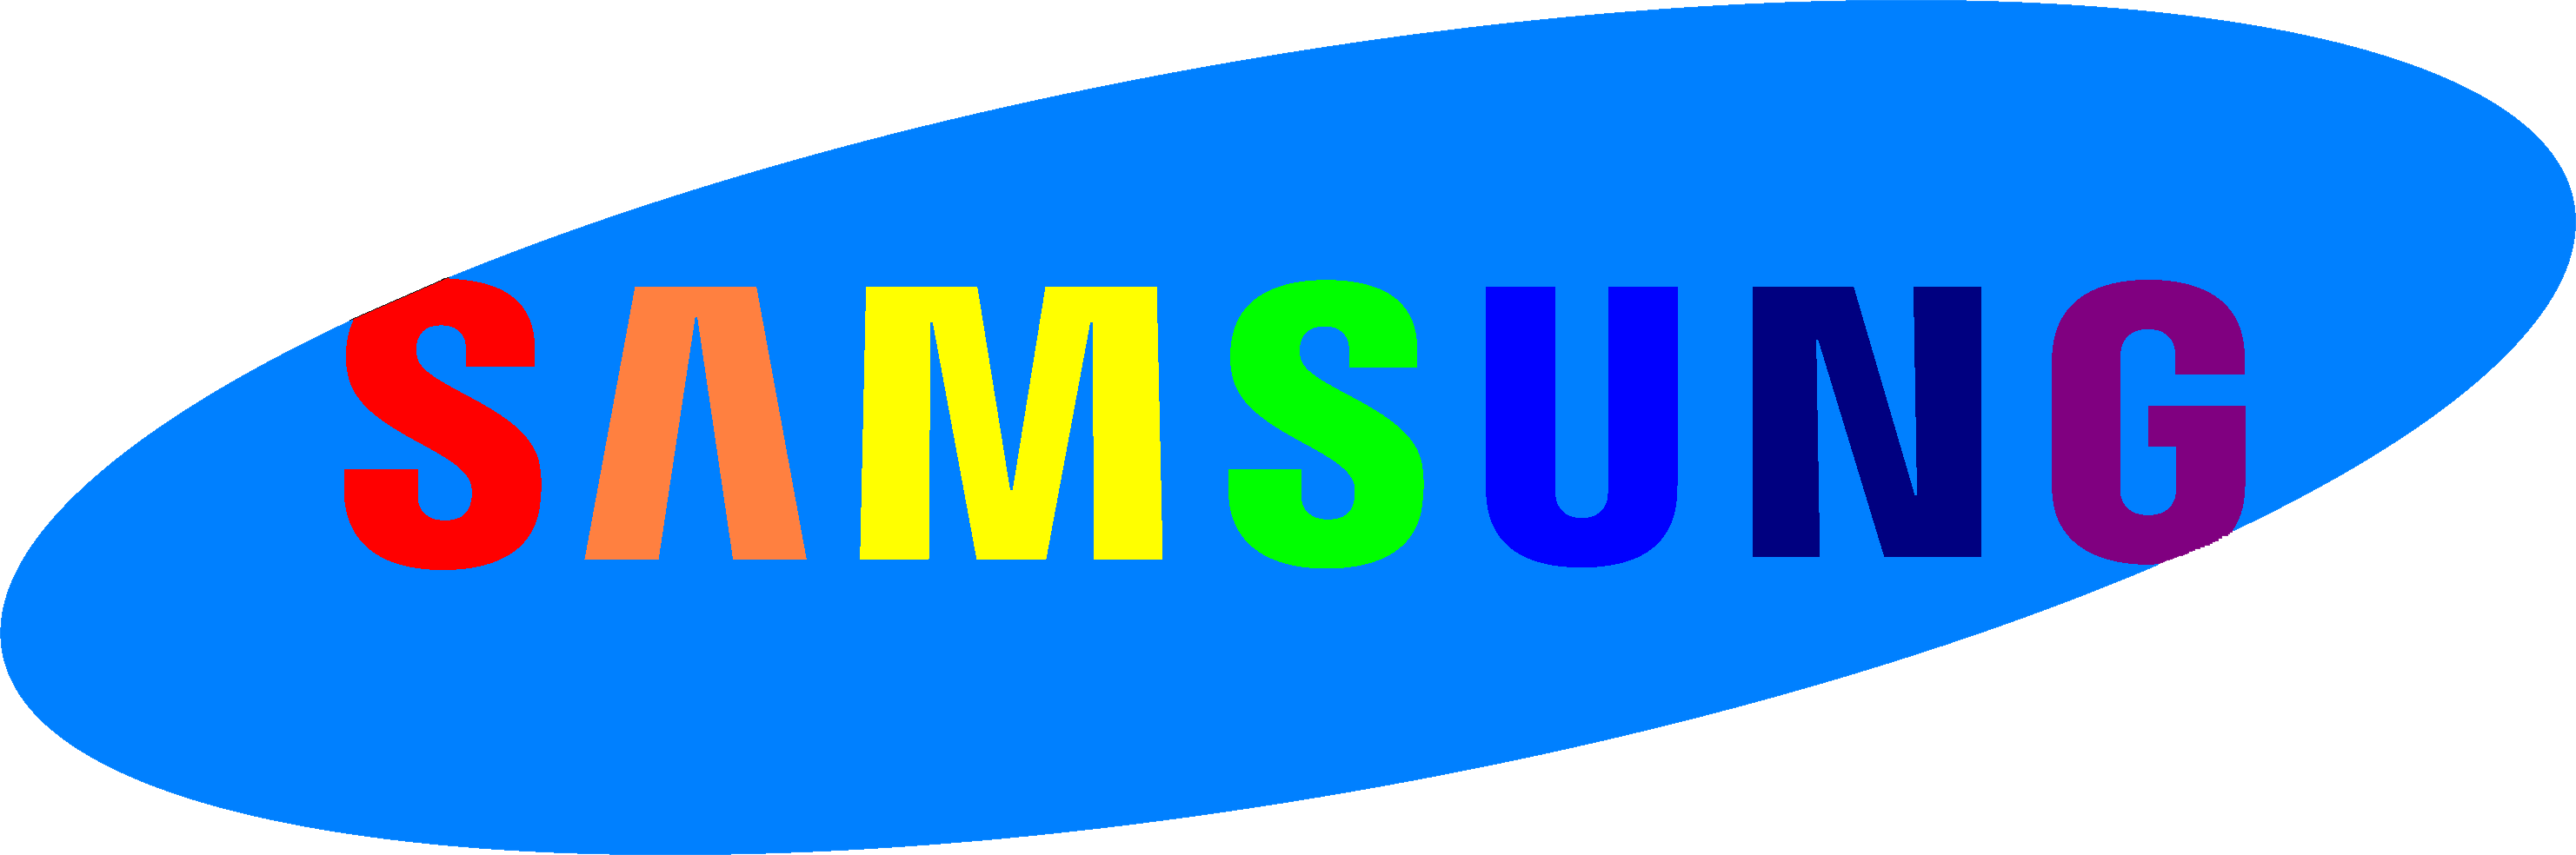 Samsung Logo PNG Transparent Samsung Logo.PNG Images.  PlusPNG